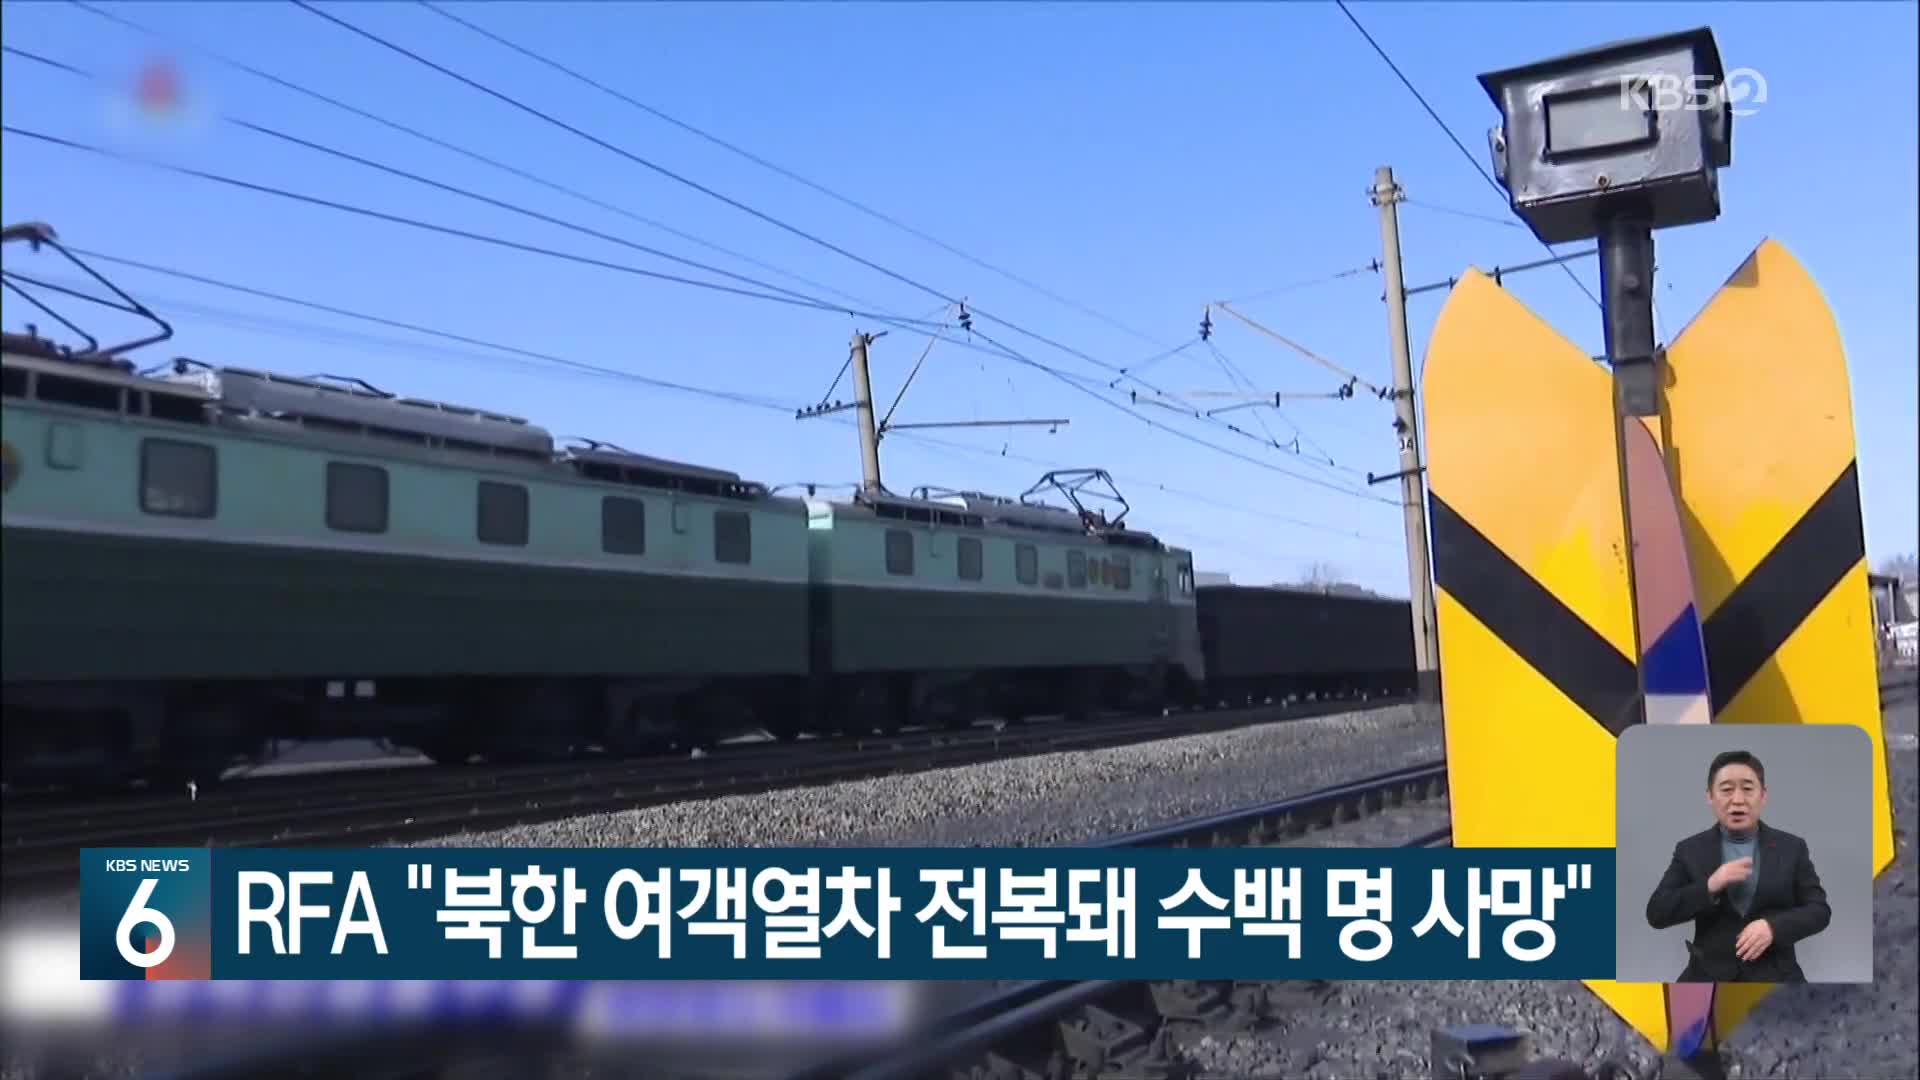 RFA “북한 여객열차 전복돼 수백 명 사망”